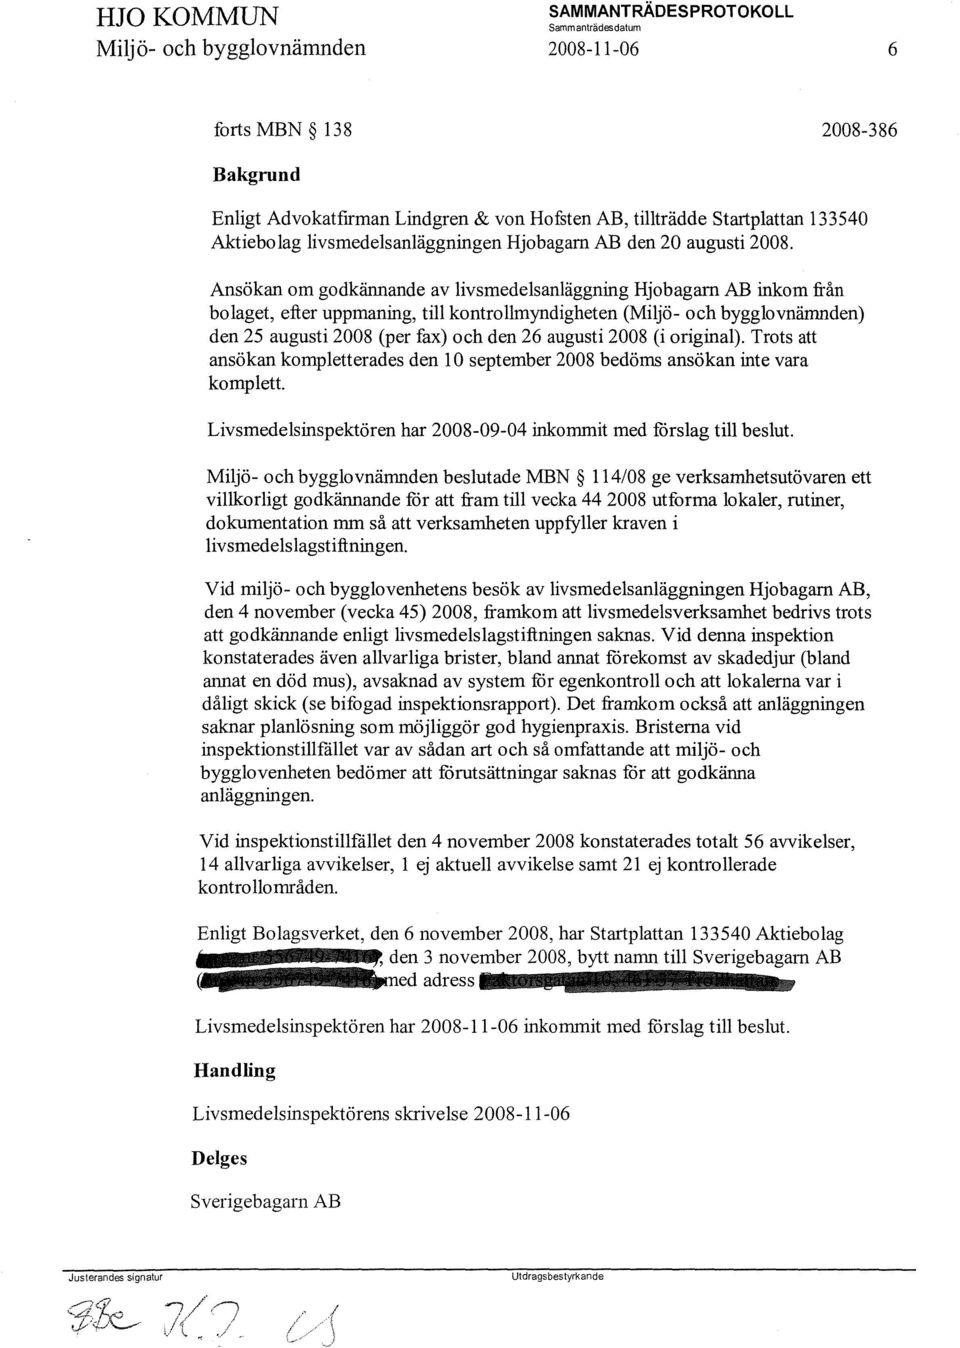 Ansökan om godkännande av livsmedelsanläggning Hjobagarn AB inkom från bolaget, efter uppmaning, till kontrollmyndigheten (Miljö- och bygglovnämnden) den 25 augusti 2008 (per fax) och den 26 augusti